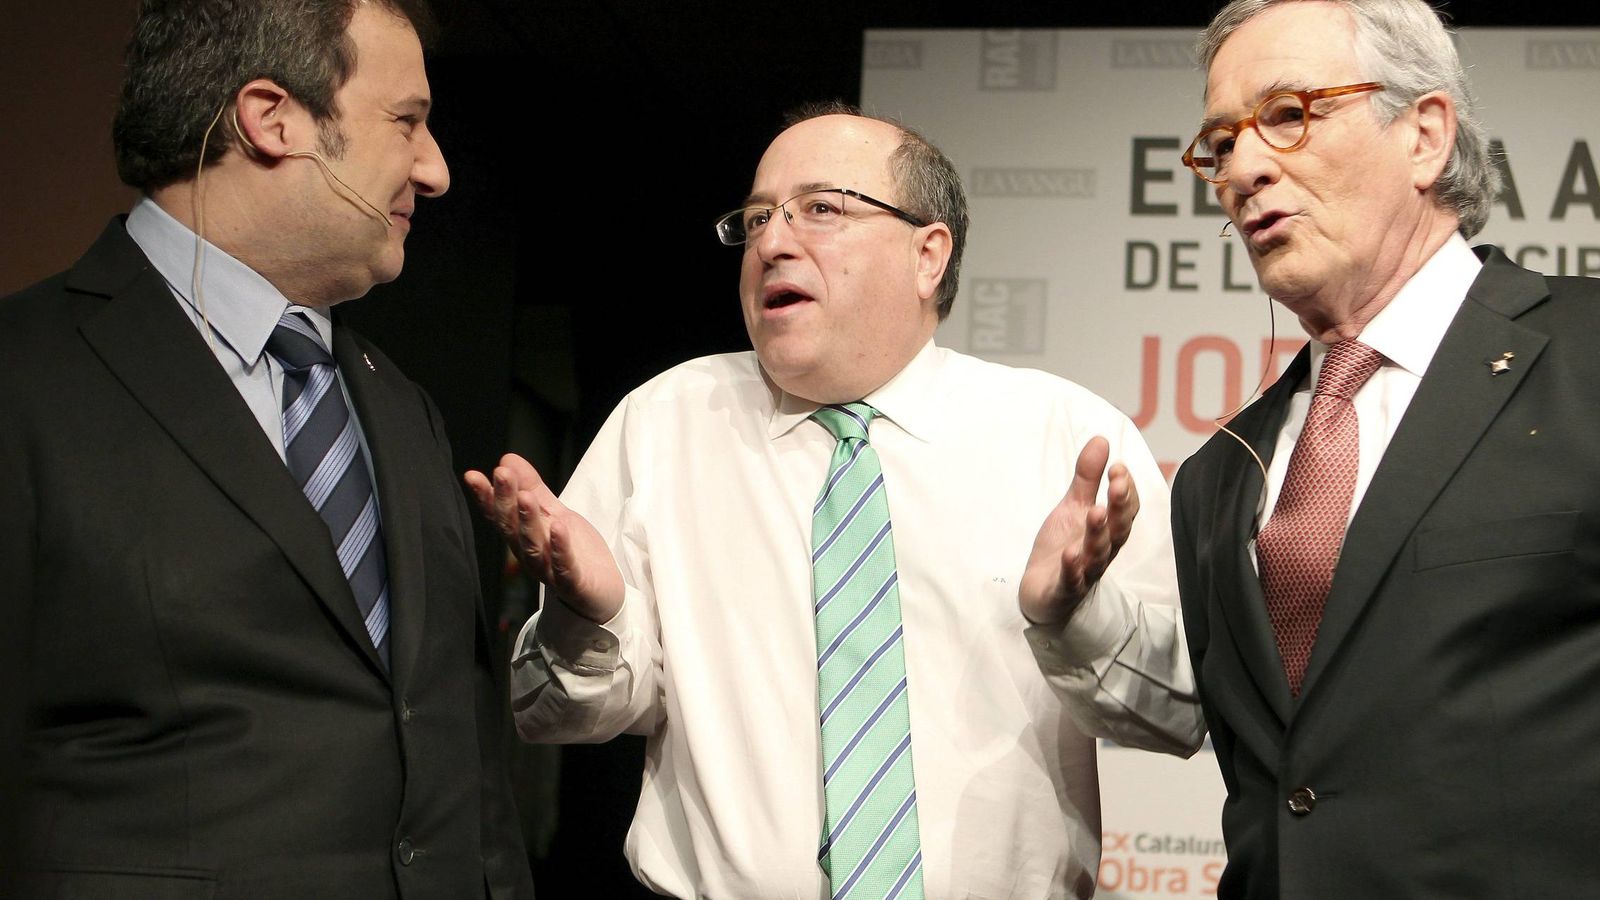 Foto: José Antich, en el centro, en una imagen de archivo junto a Jordi Hereu y Xavier Trias. (EFE)